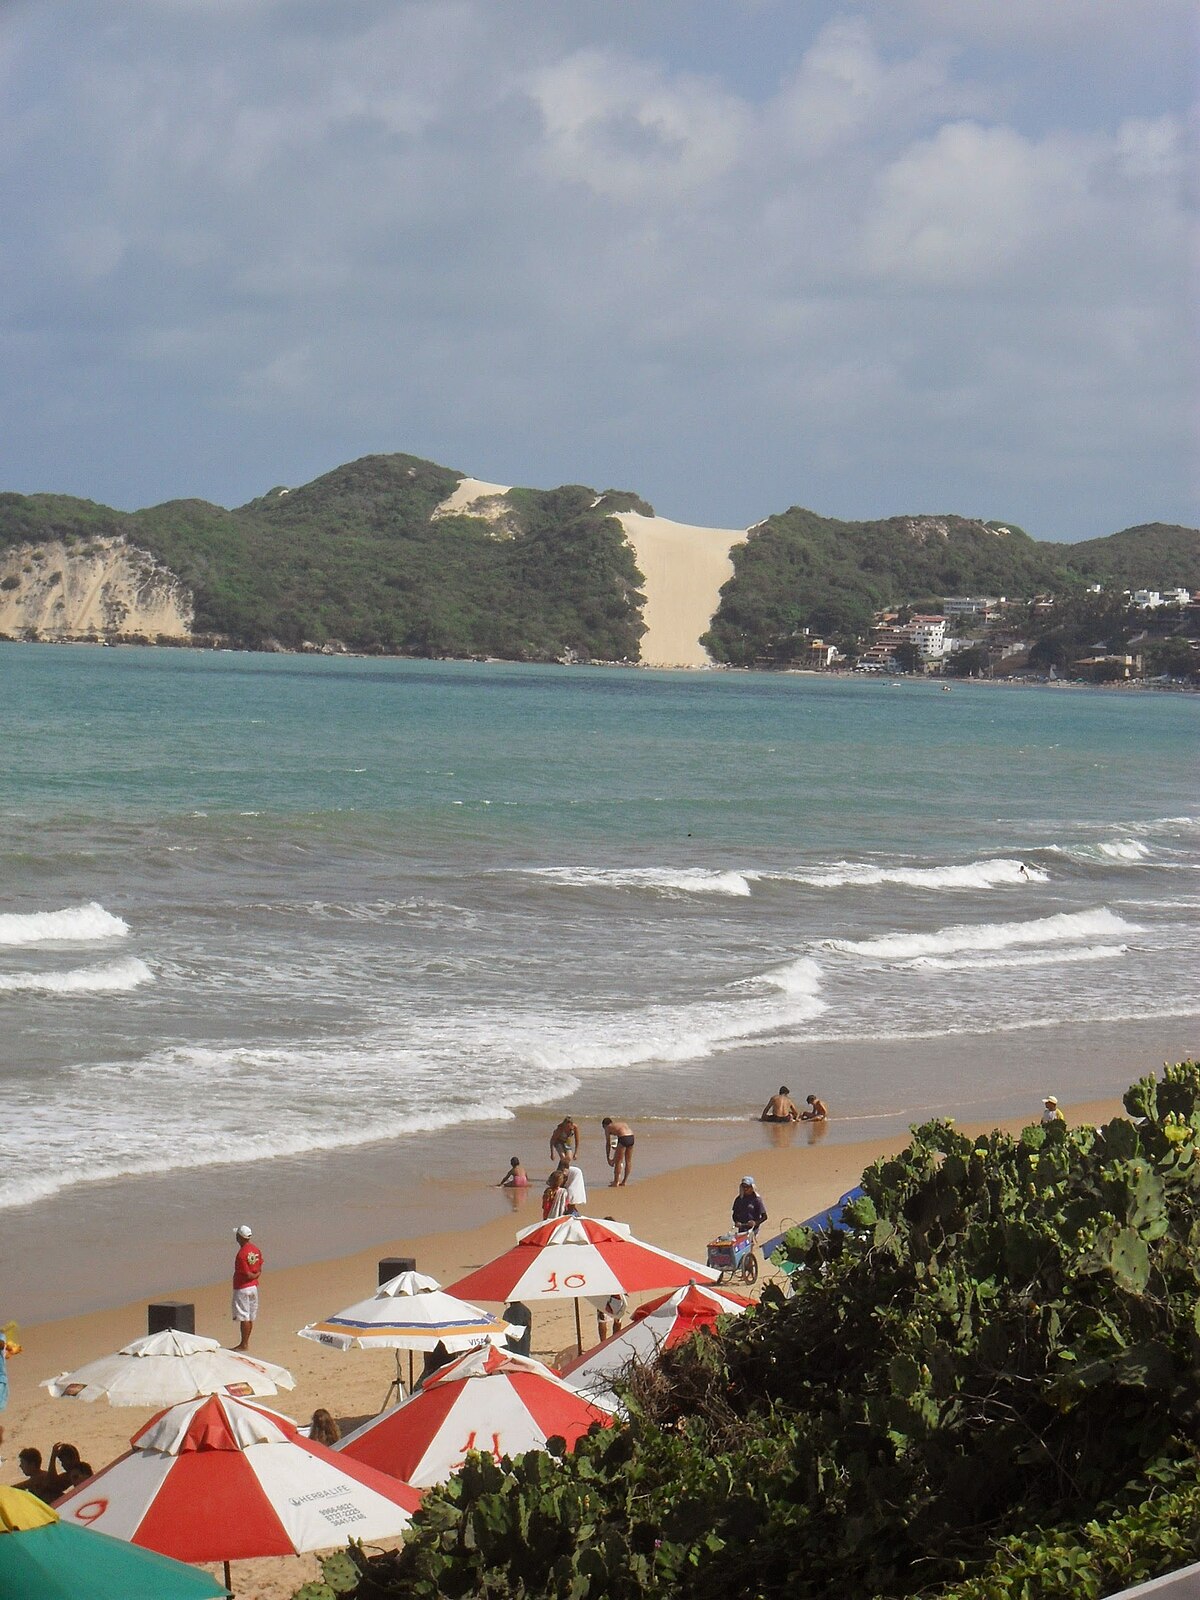 File:Morro do Careca, Praia de Ponta Negra,  - Wikimedia Commons